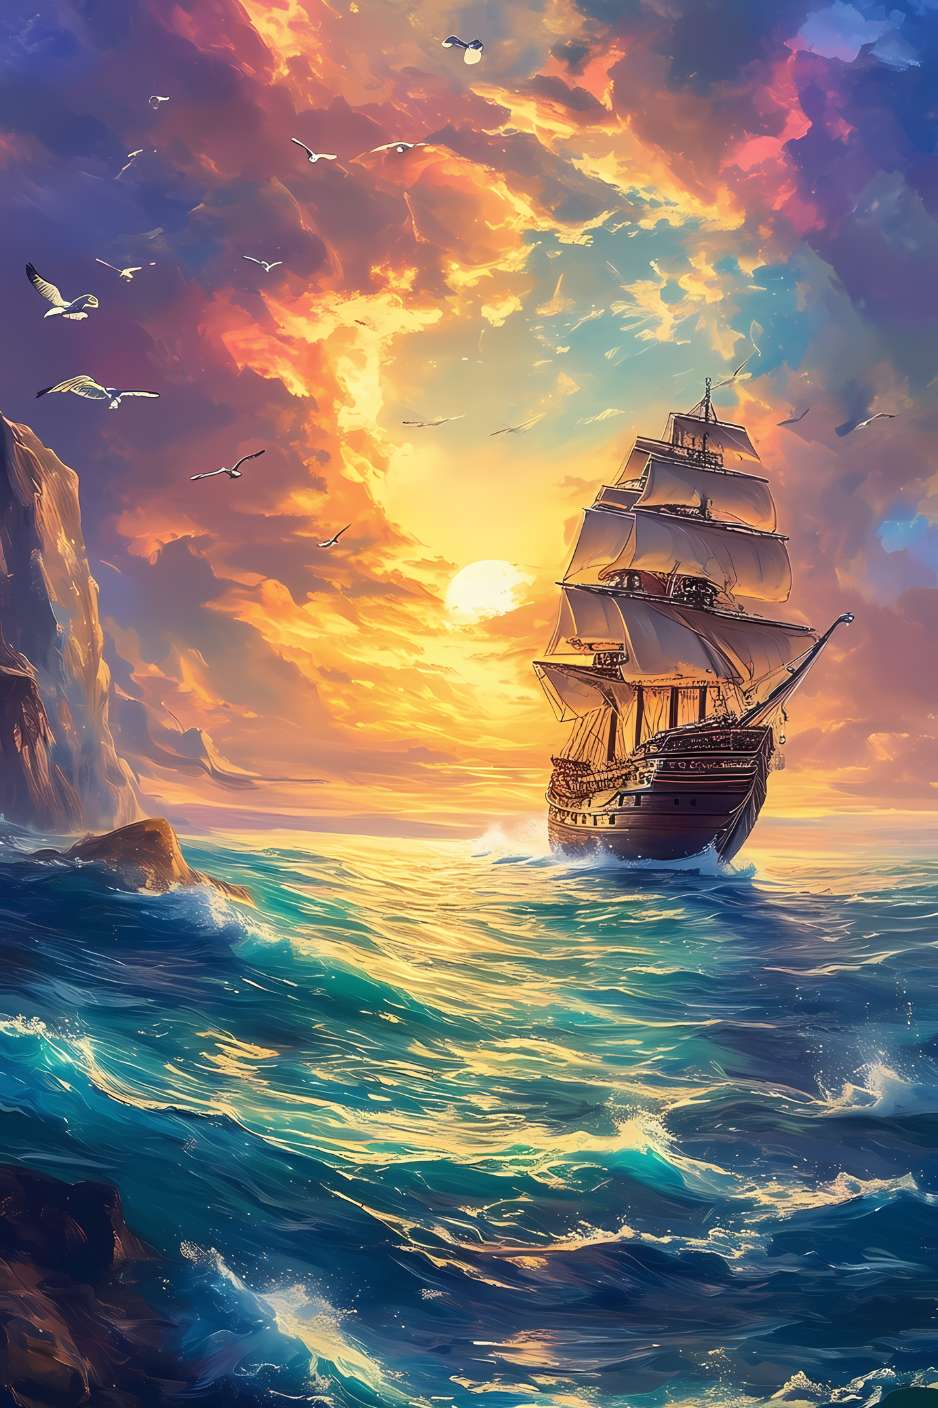 Un voilier majestueux fend les eaux miroitantes sous un coucher de soleil flamboyant, créant une symphonie de couleurs et de lumière envoûtante